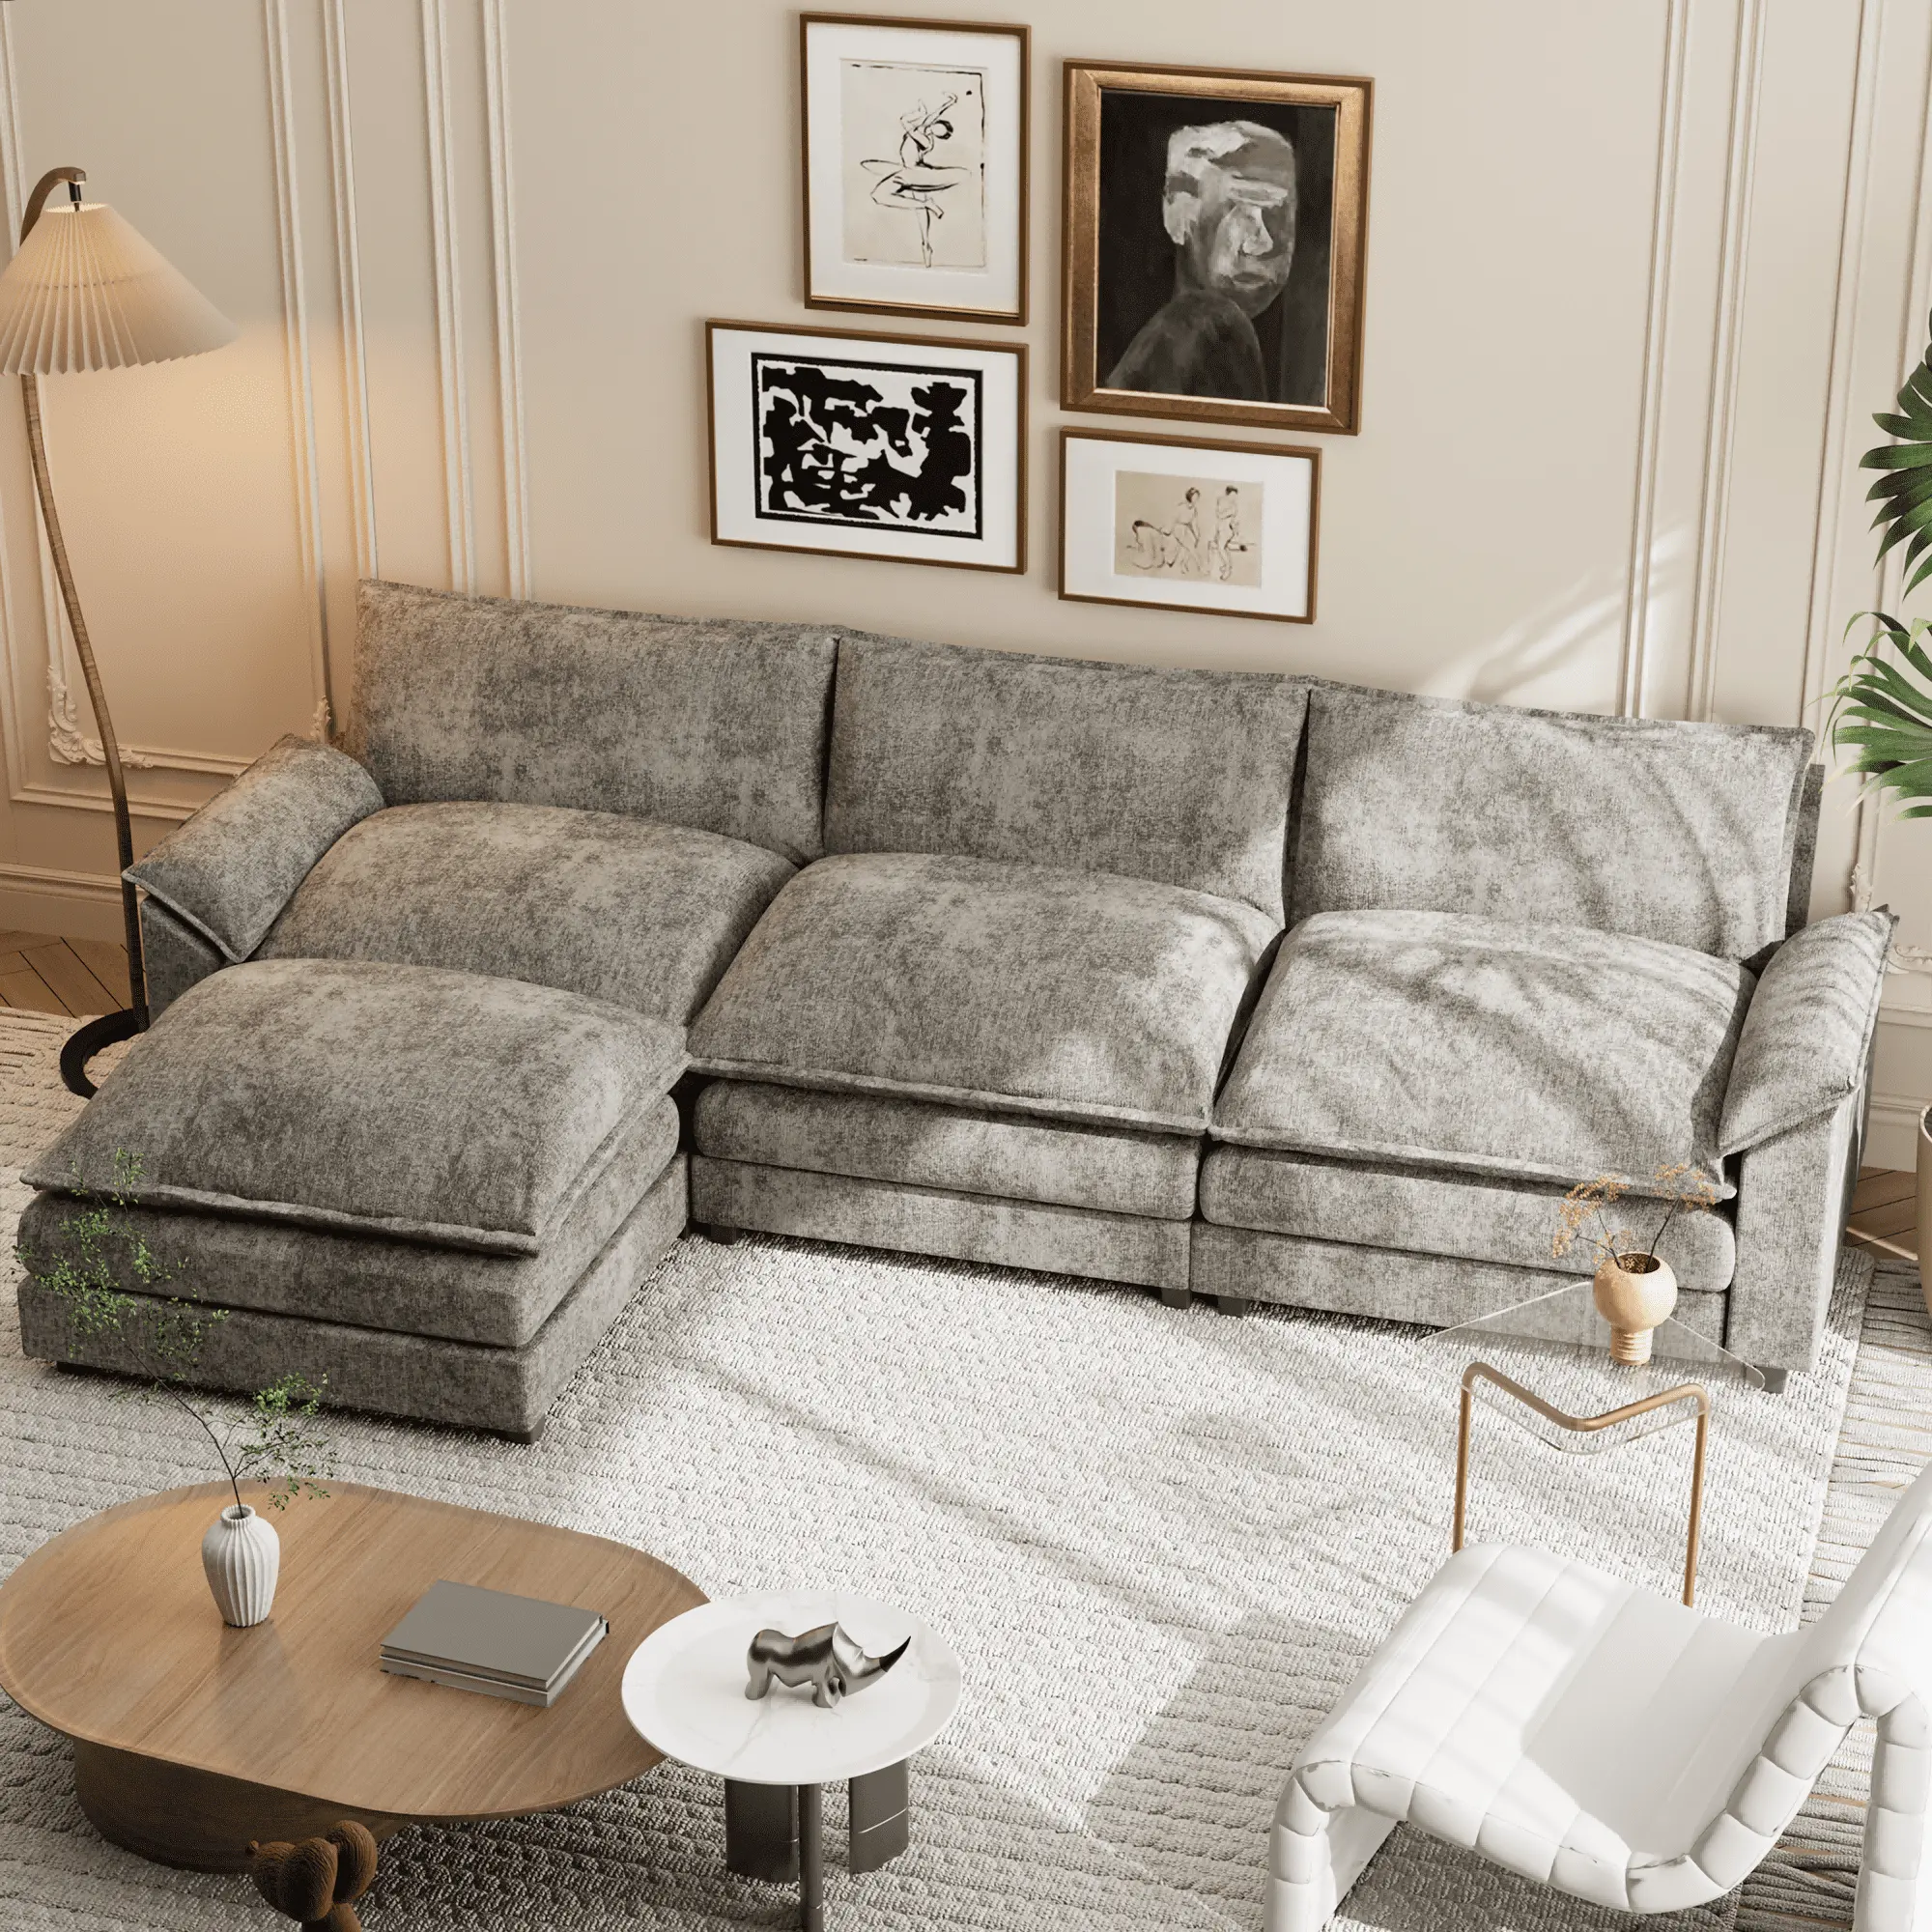 ATUNUS-Sofá seccional en forma de U para el hogar, muebles modernos de estilo americano de alta calidad para sala de estar, conjunto de sofá de lujo